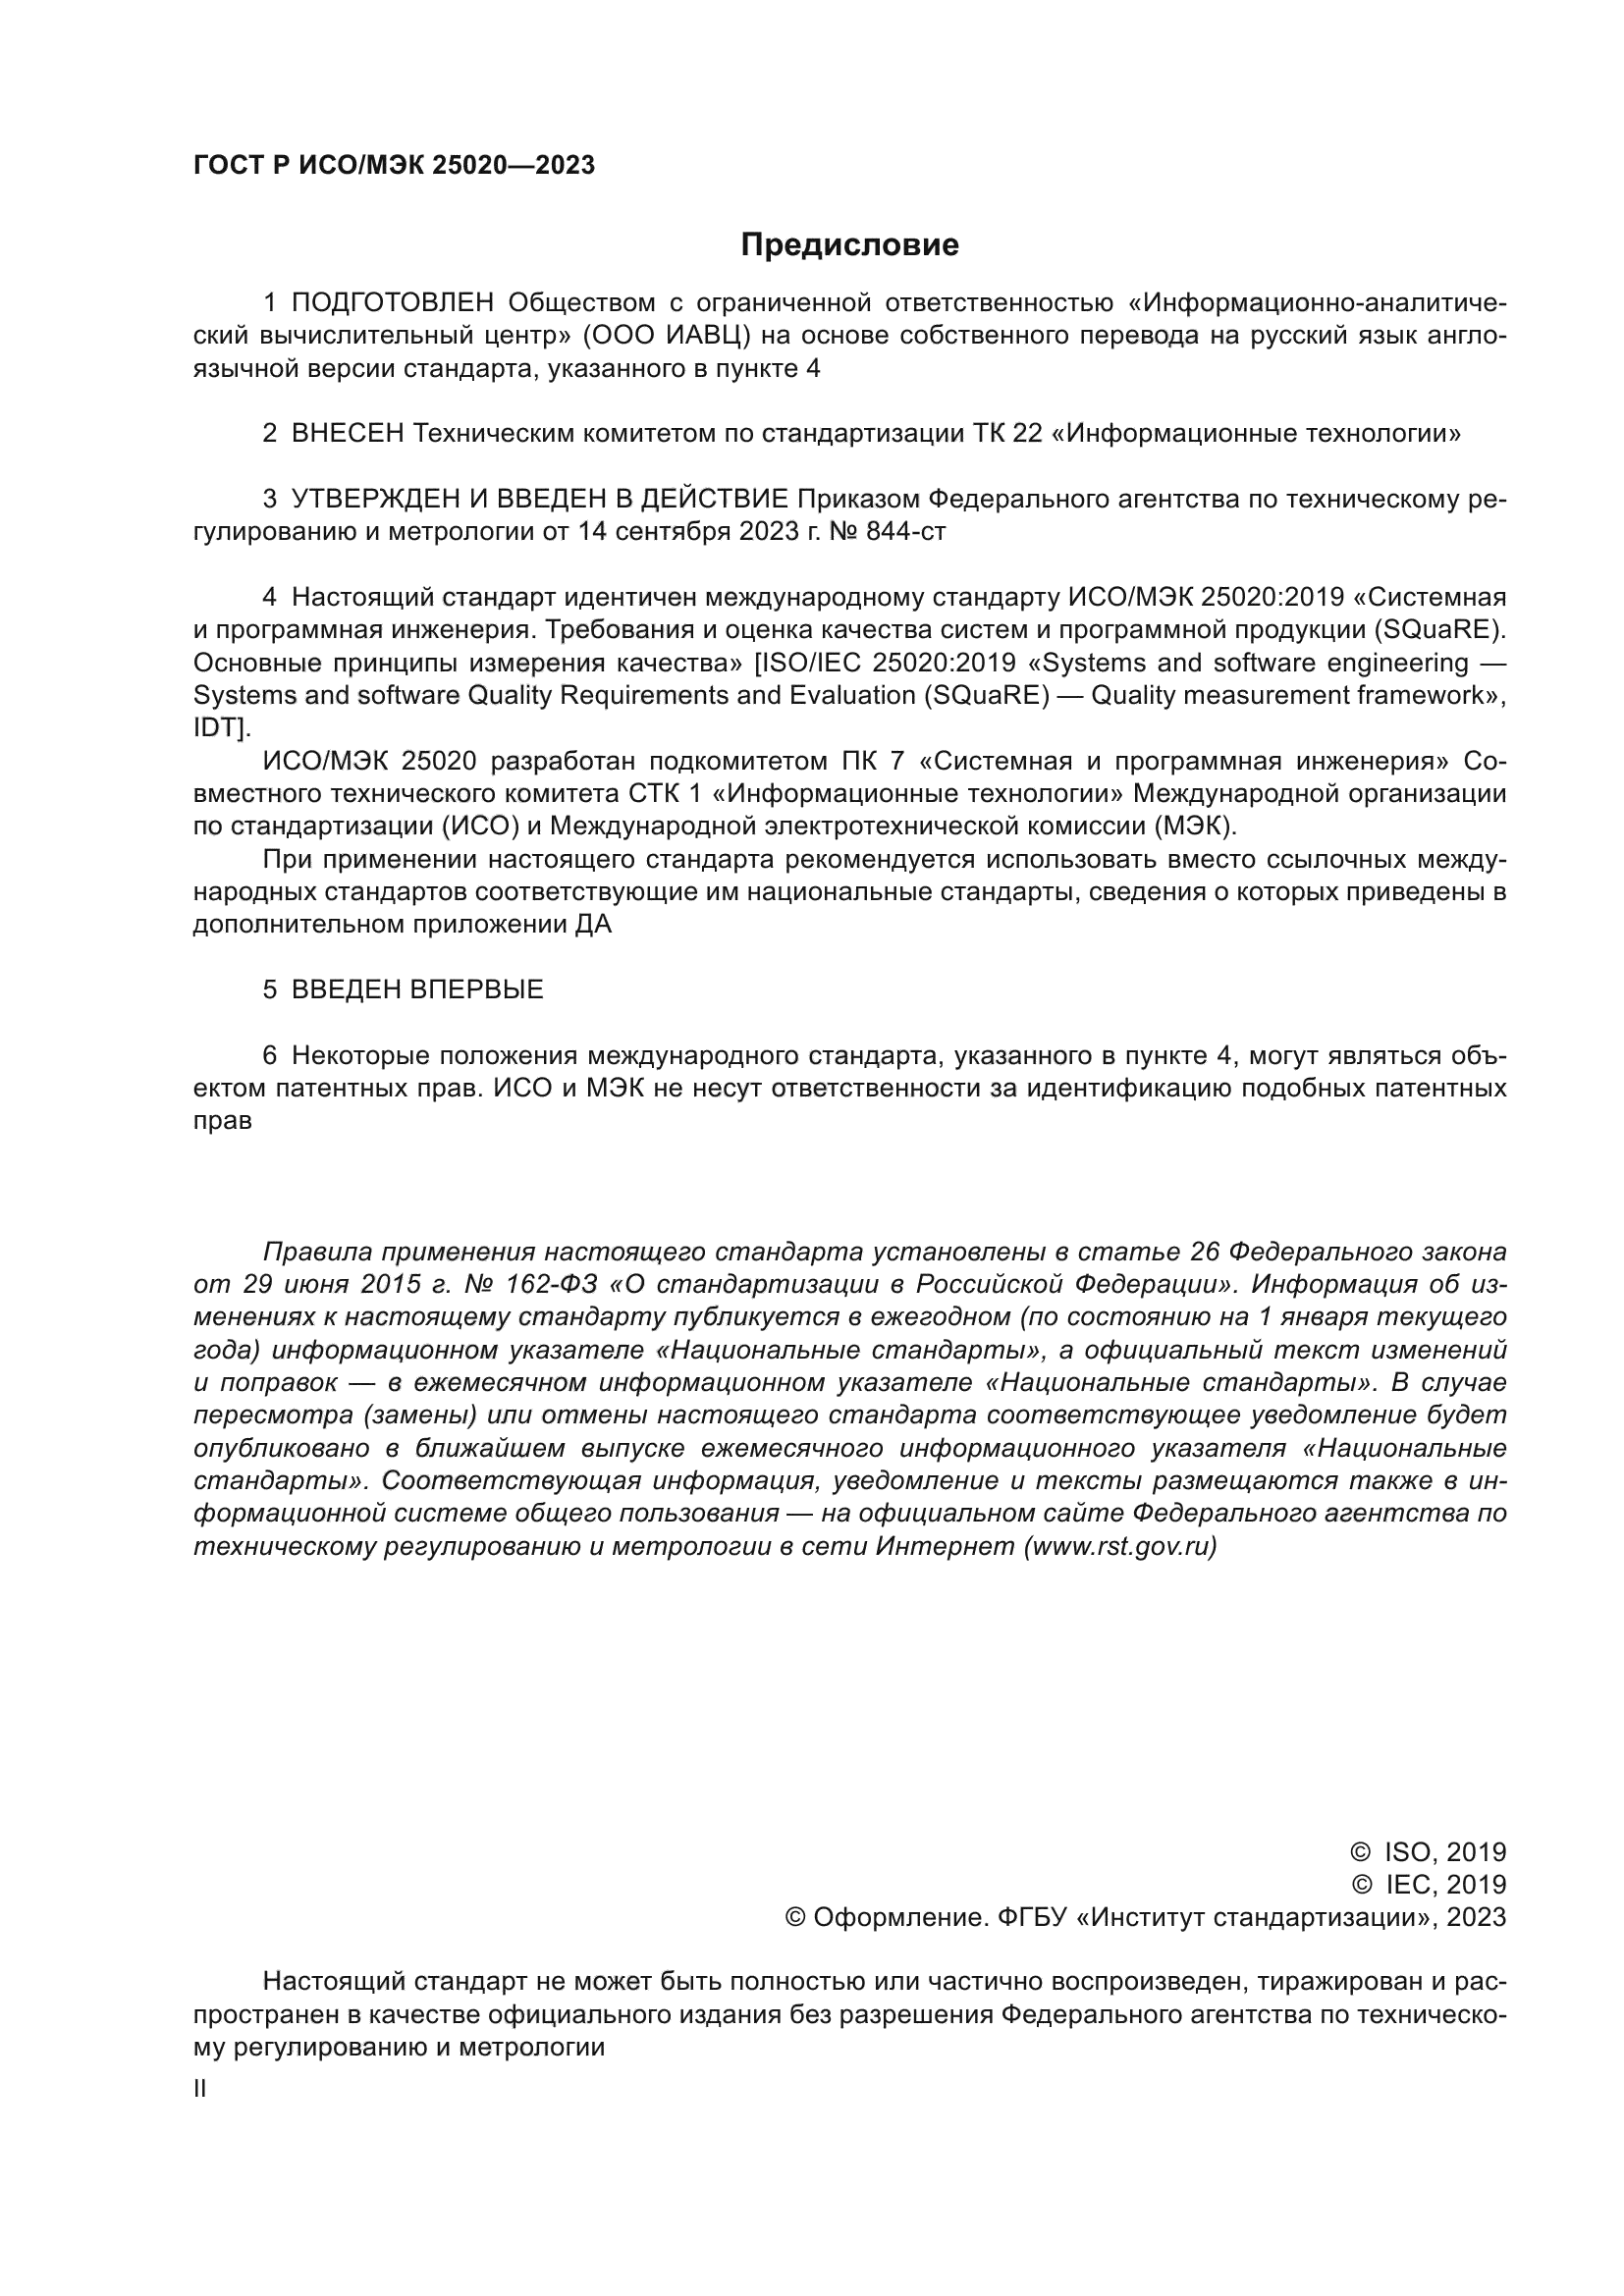 ГОСТ Р ИСО/МЭК 25020-2023